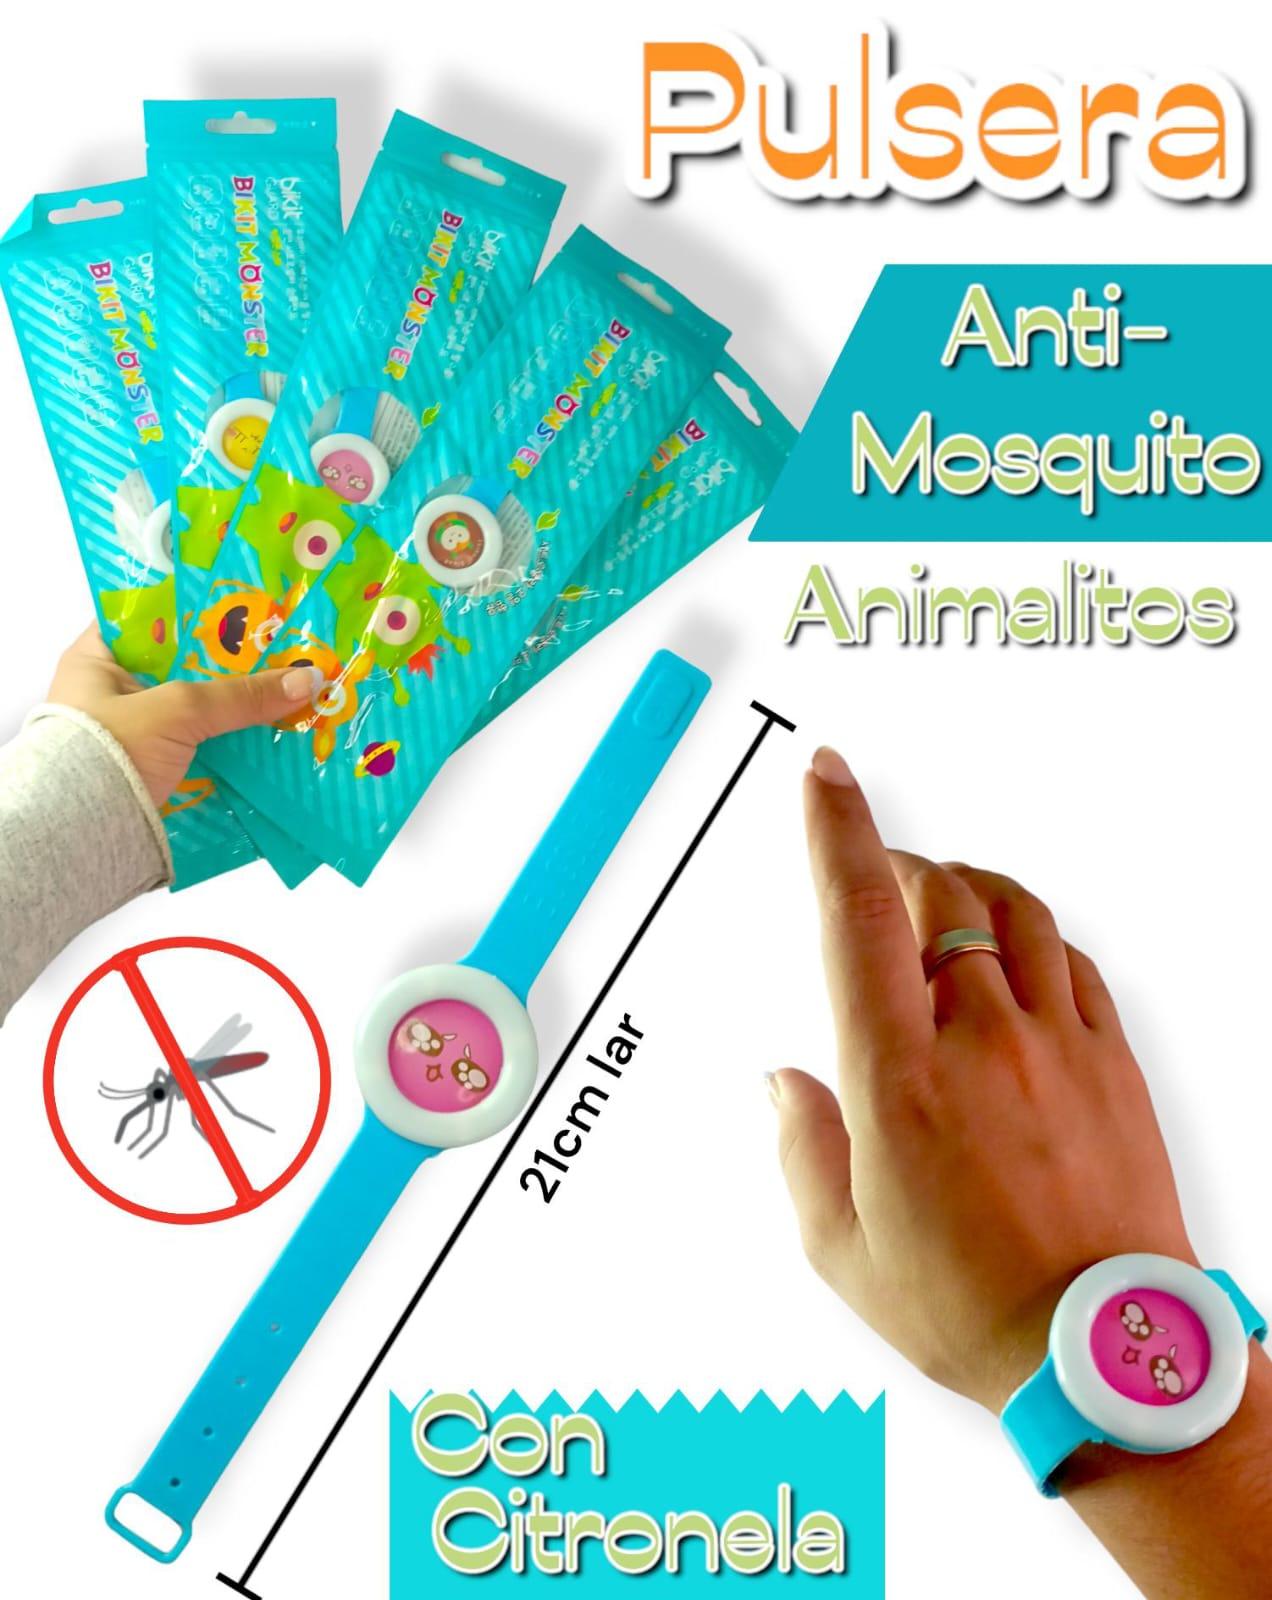 Pulsera repelente Anti mosquitos ANIMALITOS